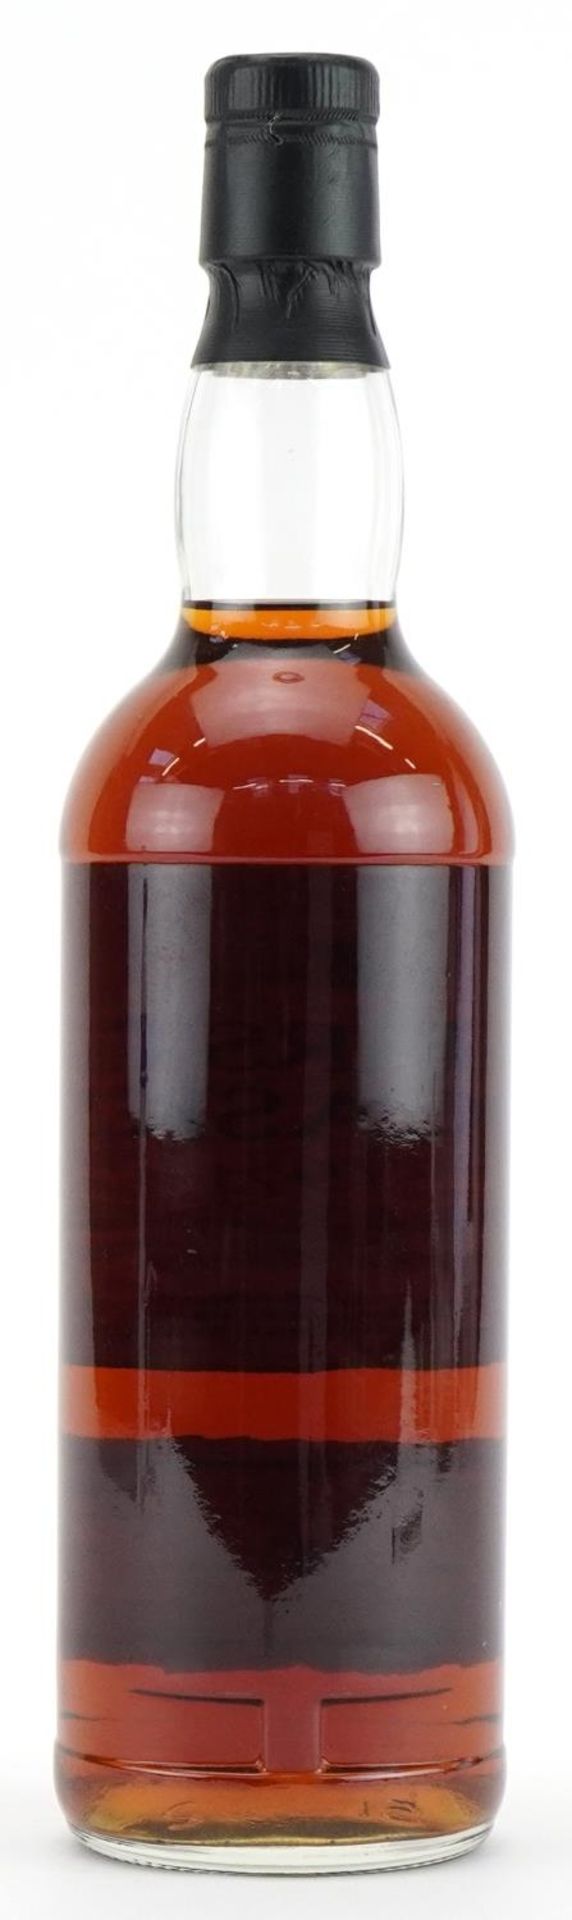 Bottle of First Cask 1973 Glenlivet Speyside 21 Year Old Malt whisky, cask number 3947, bottle - Image 3 of 3